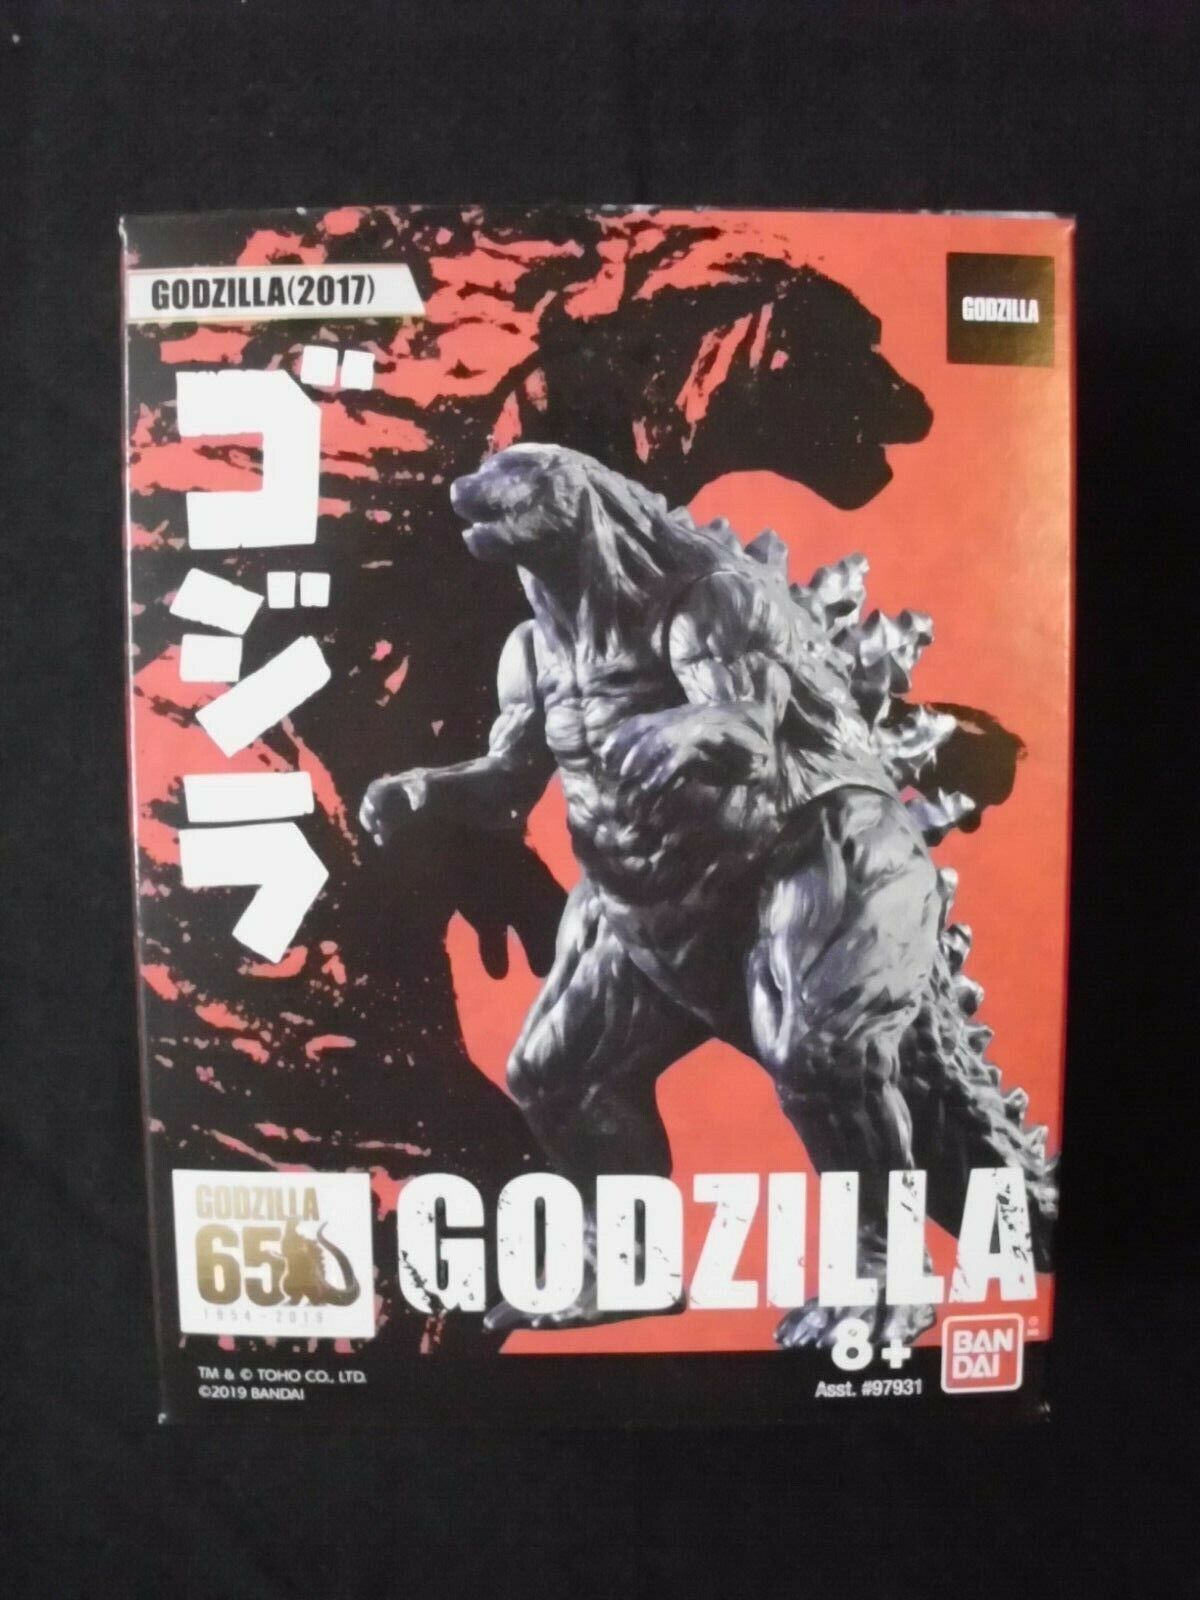 Godzilla 65th Anniversary 3.5 Inch Figure - Godzilla (2017) - Made By Bandai